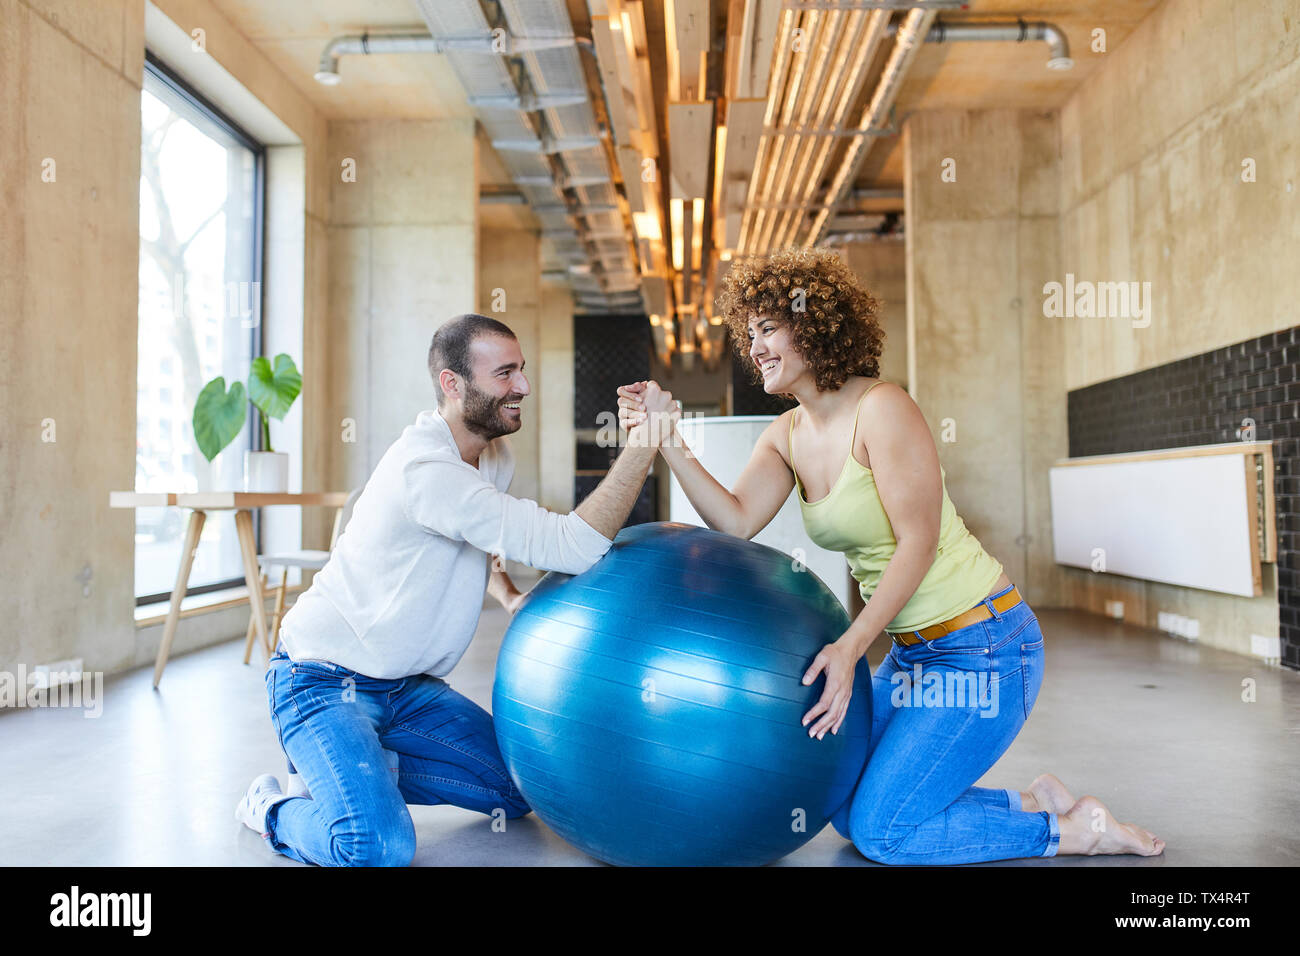 Felice l'uomo e donna wrestling braccio sulla sfera di fitness in ufficio moderno Foto Stock